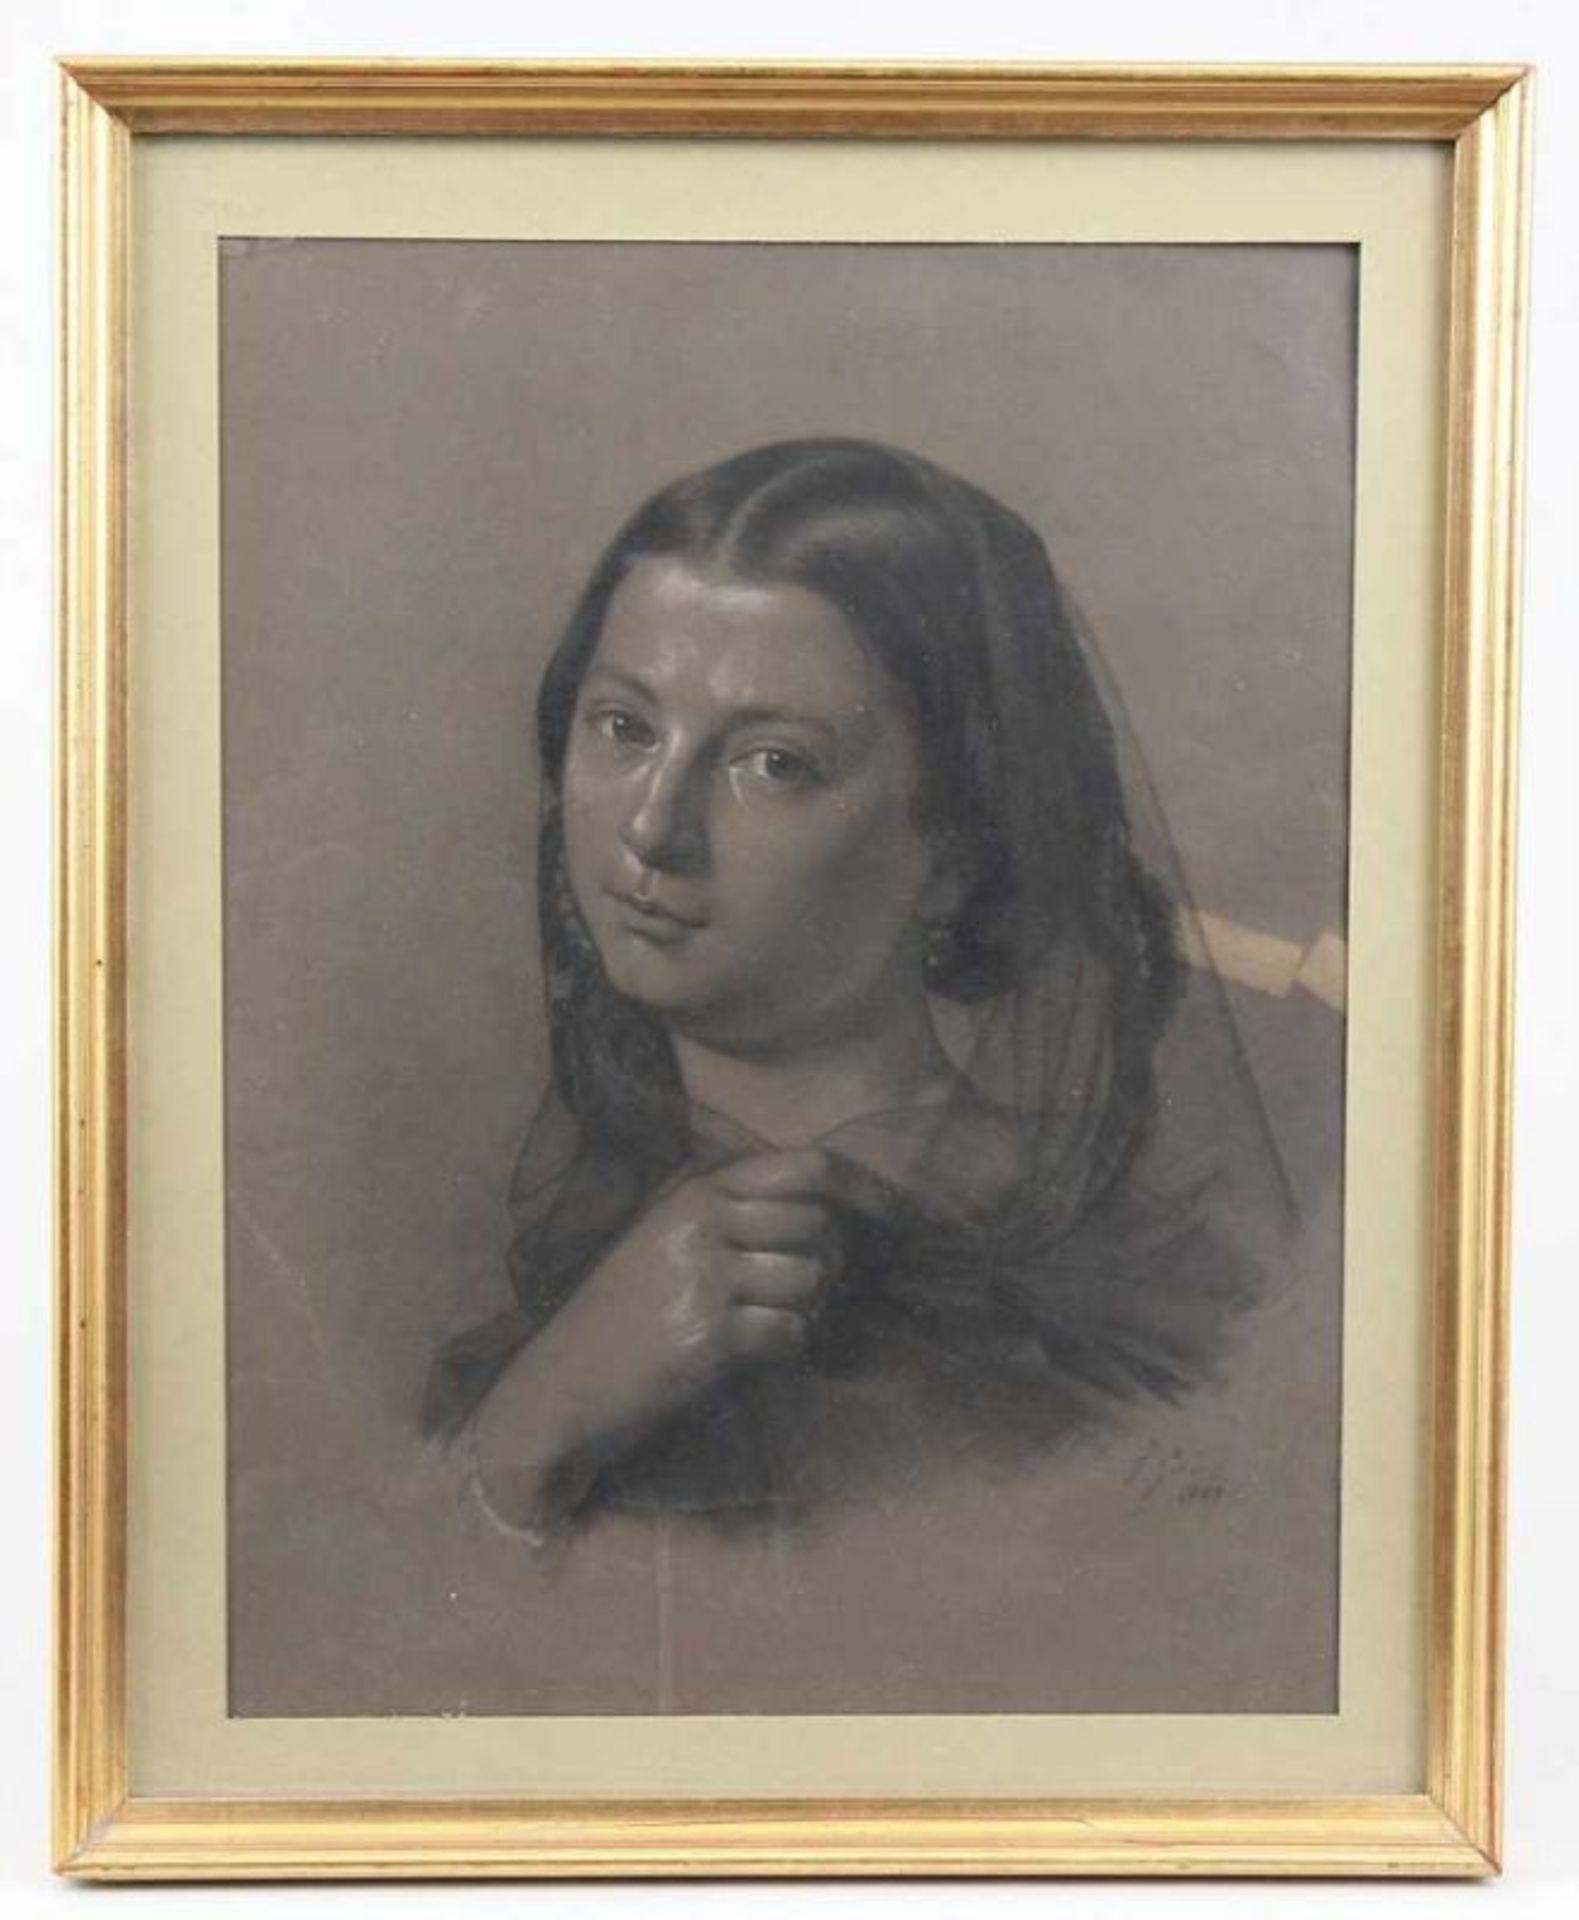 Gai, Francesco (Rom 1835 - 1917 Rom) Zeichnung, schwarze Kreide mit Weißhöhungen auf dunkelbraunem